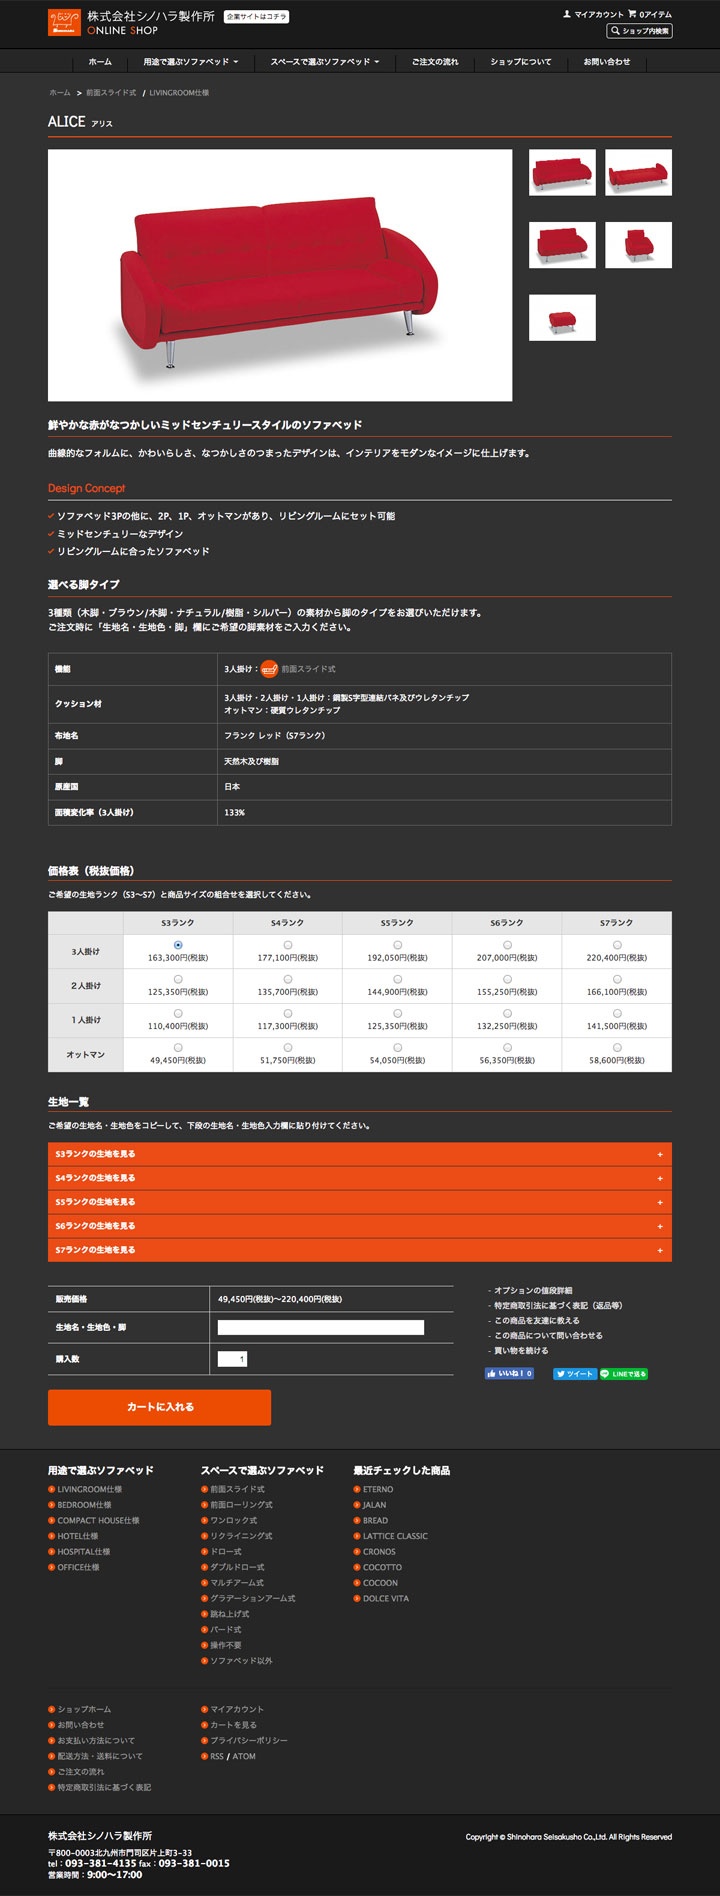 株式会社シノハラ製作所ECサイト商品詳細ページ画像